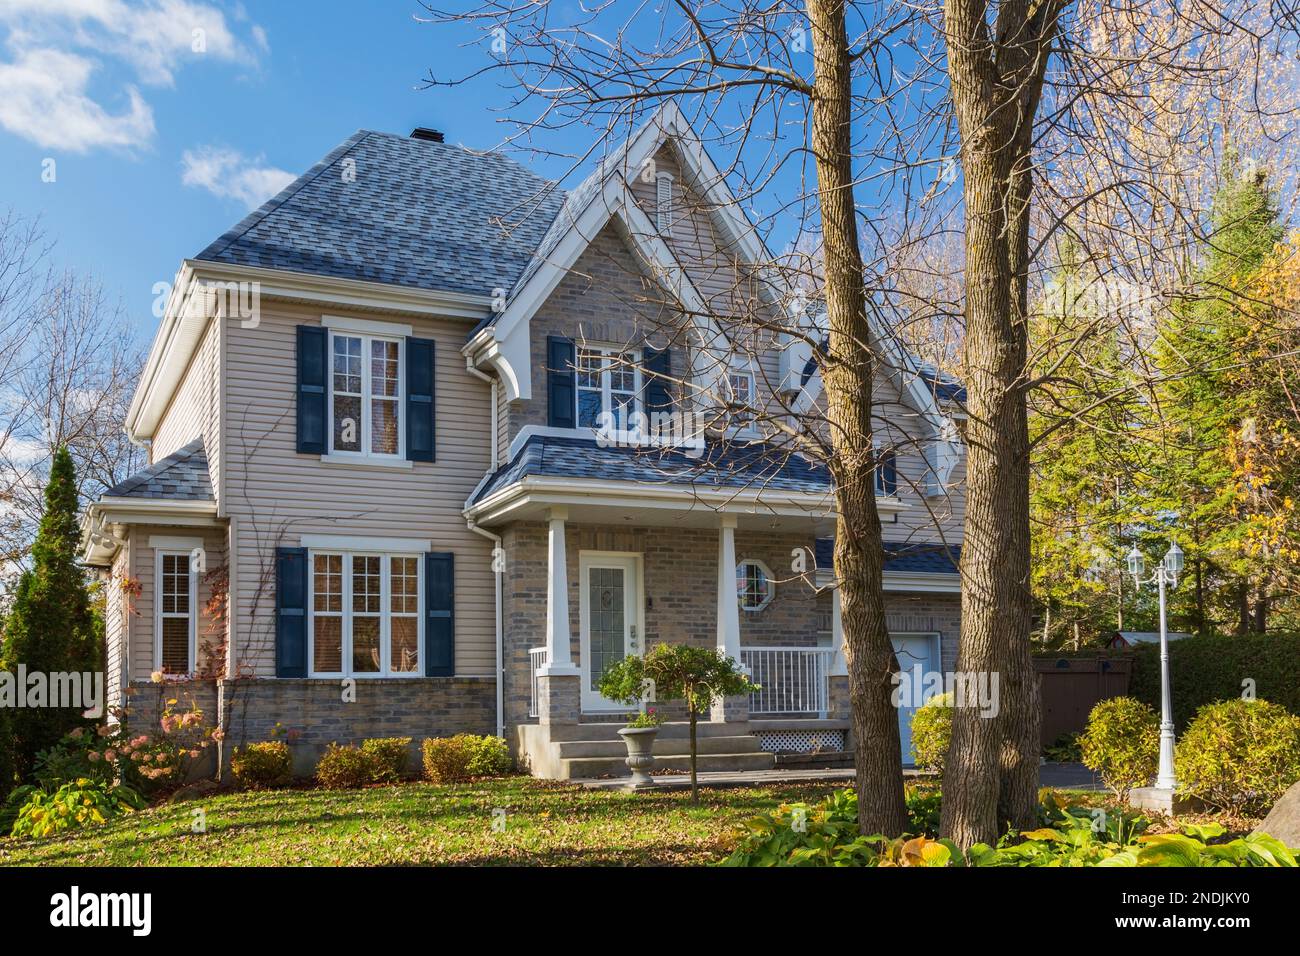 Façade de maison de style cottage en brique et vinyle brun clair avec garniture bleue et toit en bardeaux d'asphalte en automne. Banque D'Images